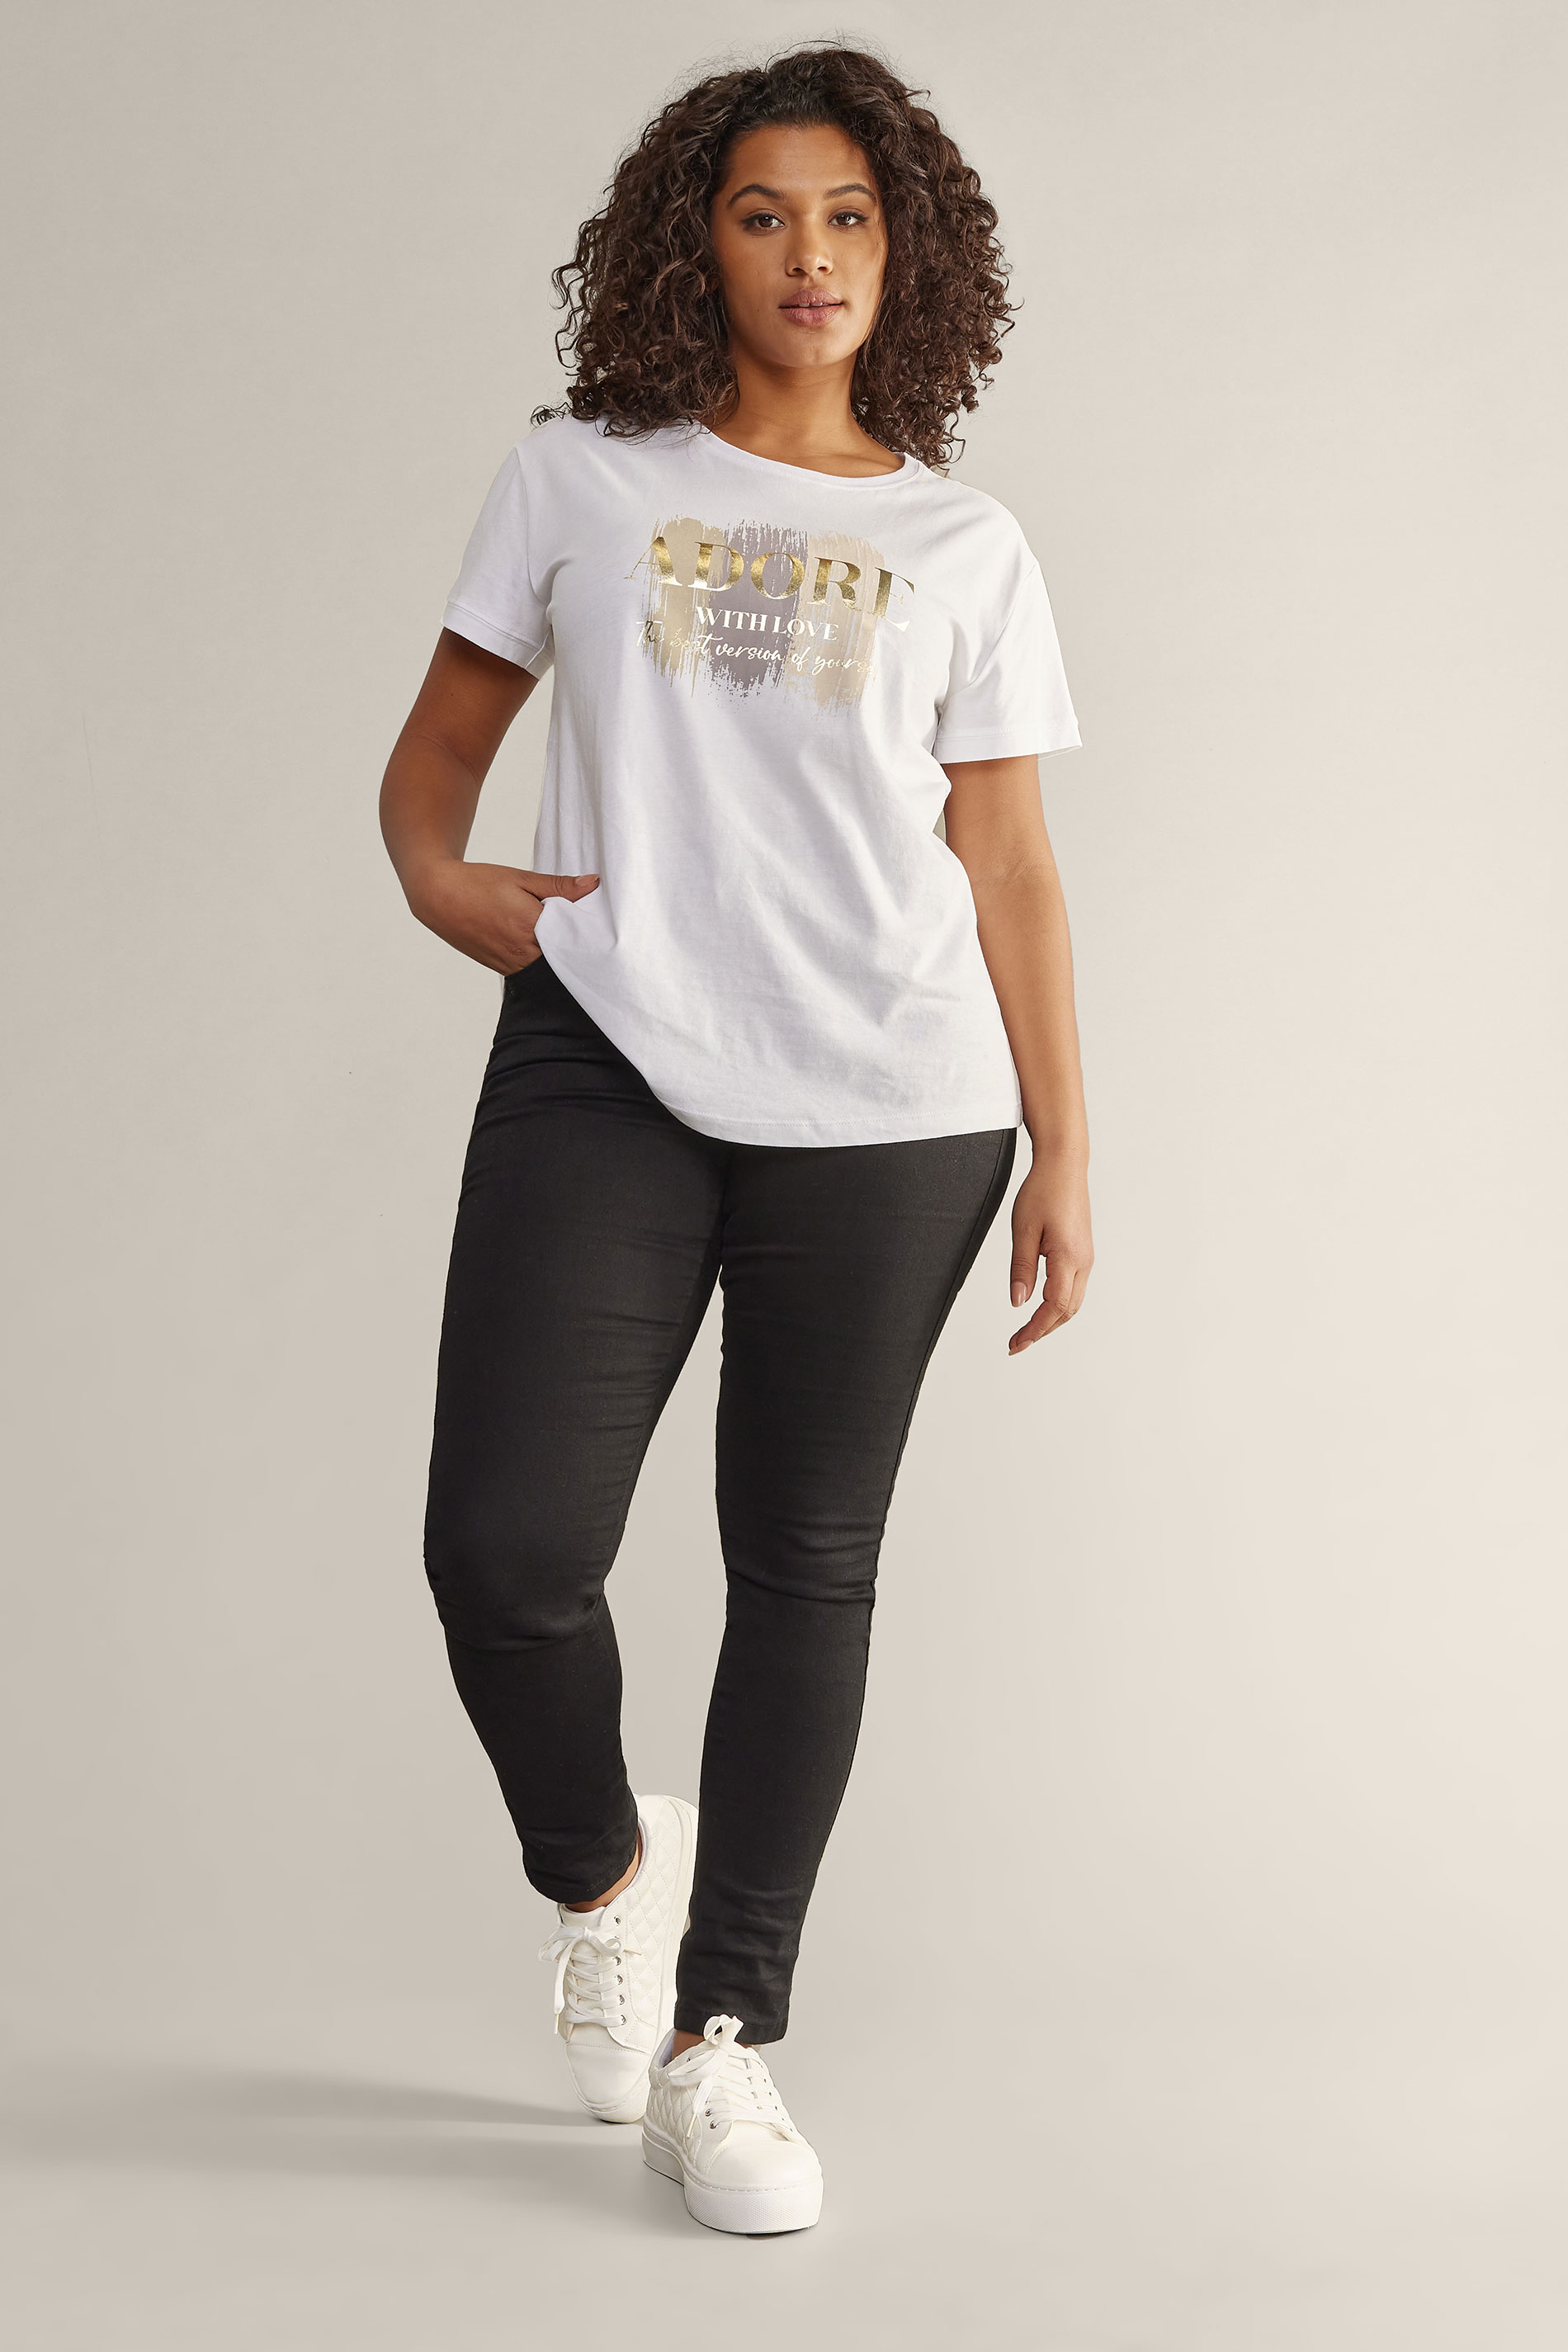 EVANS Plus Size White 'Adore' Print T-Shirt | Evans 3